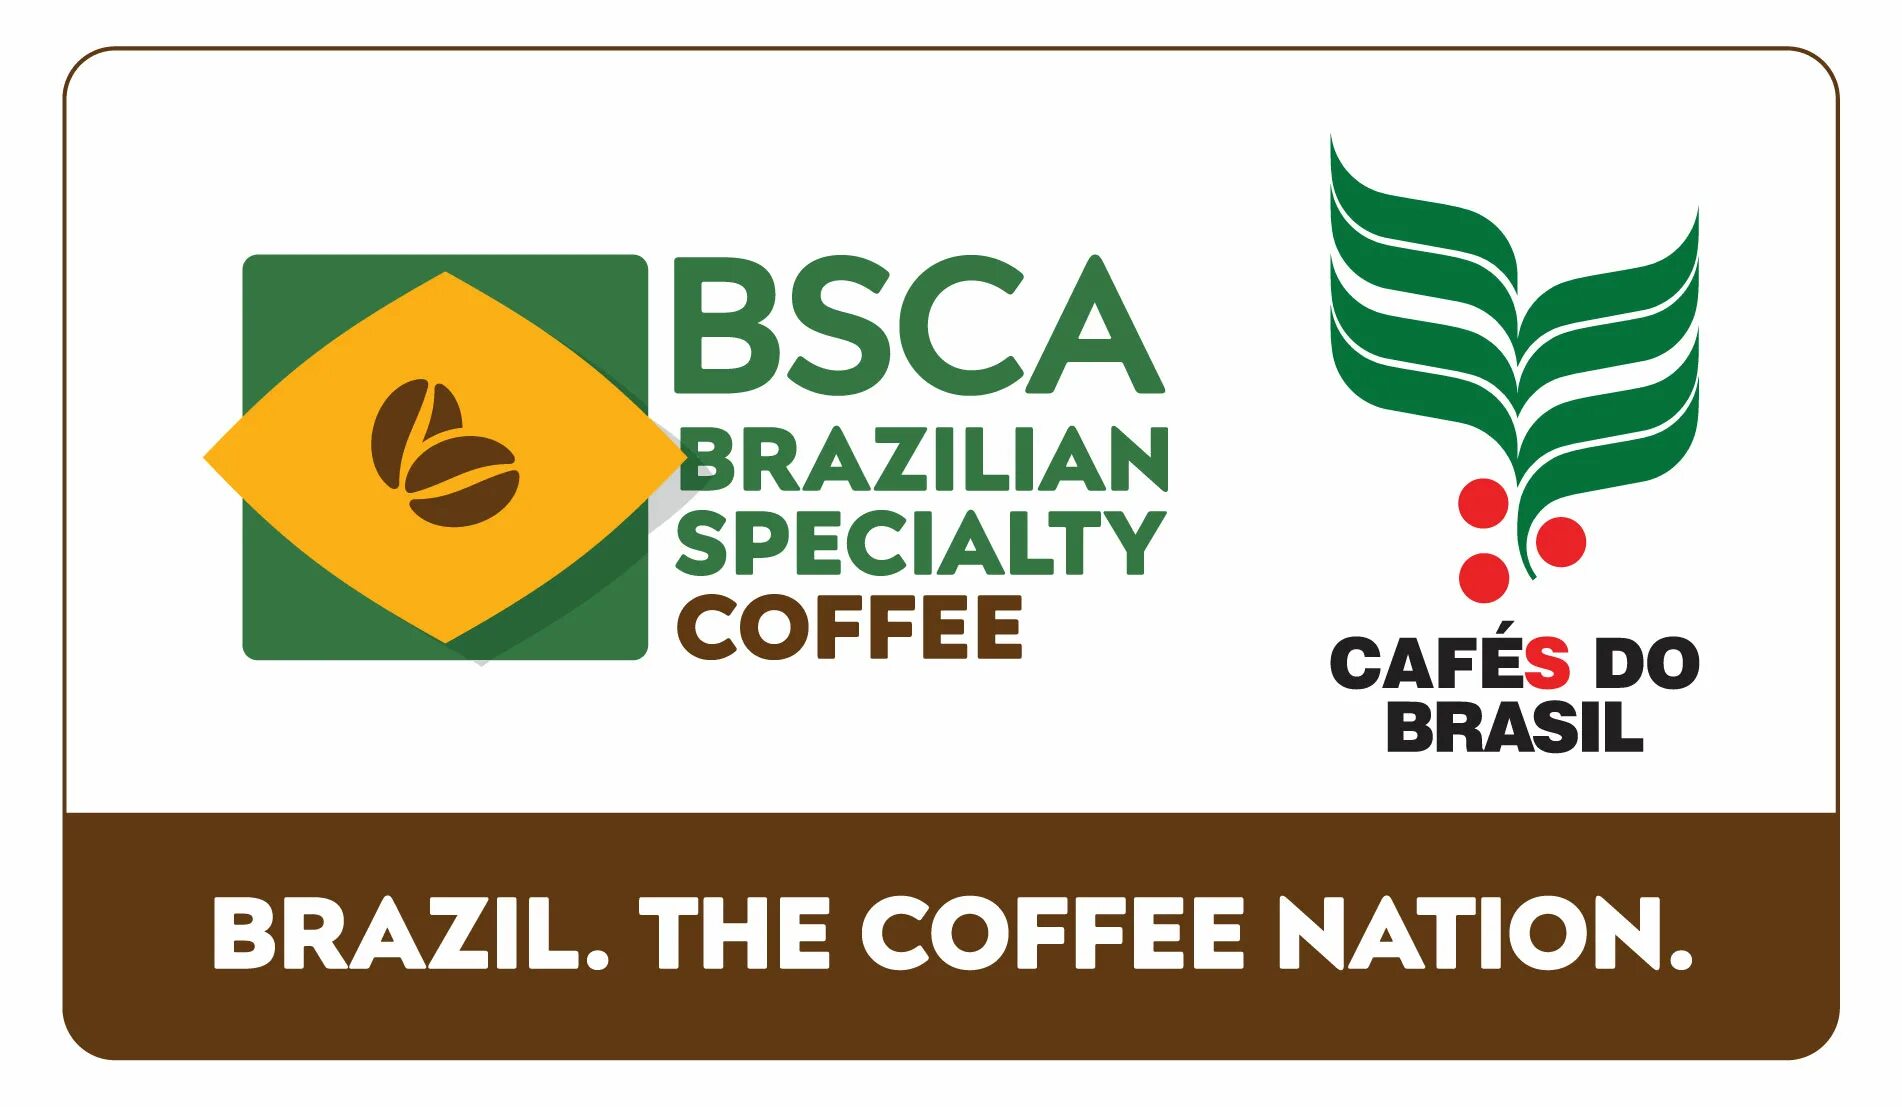 Сайт бгца минск. Cafes do Brasil кофе. Cafe do Brasil logo. Кофе Бразилии логотипы. Кафе Глобо Бразилия кофе.